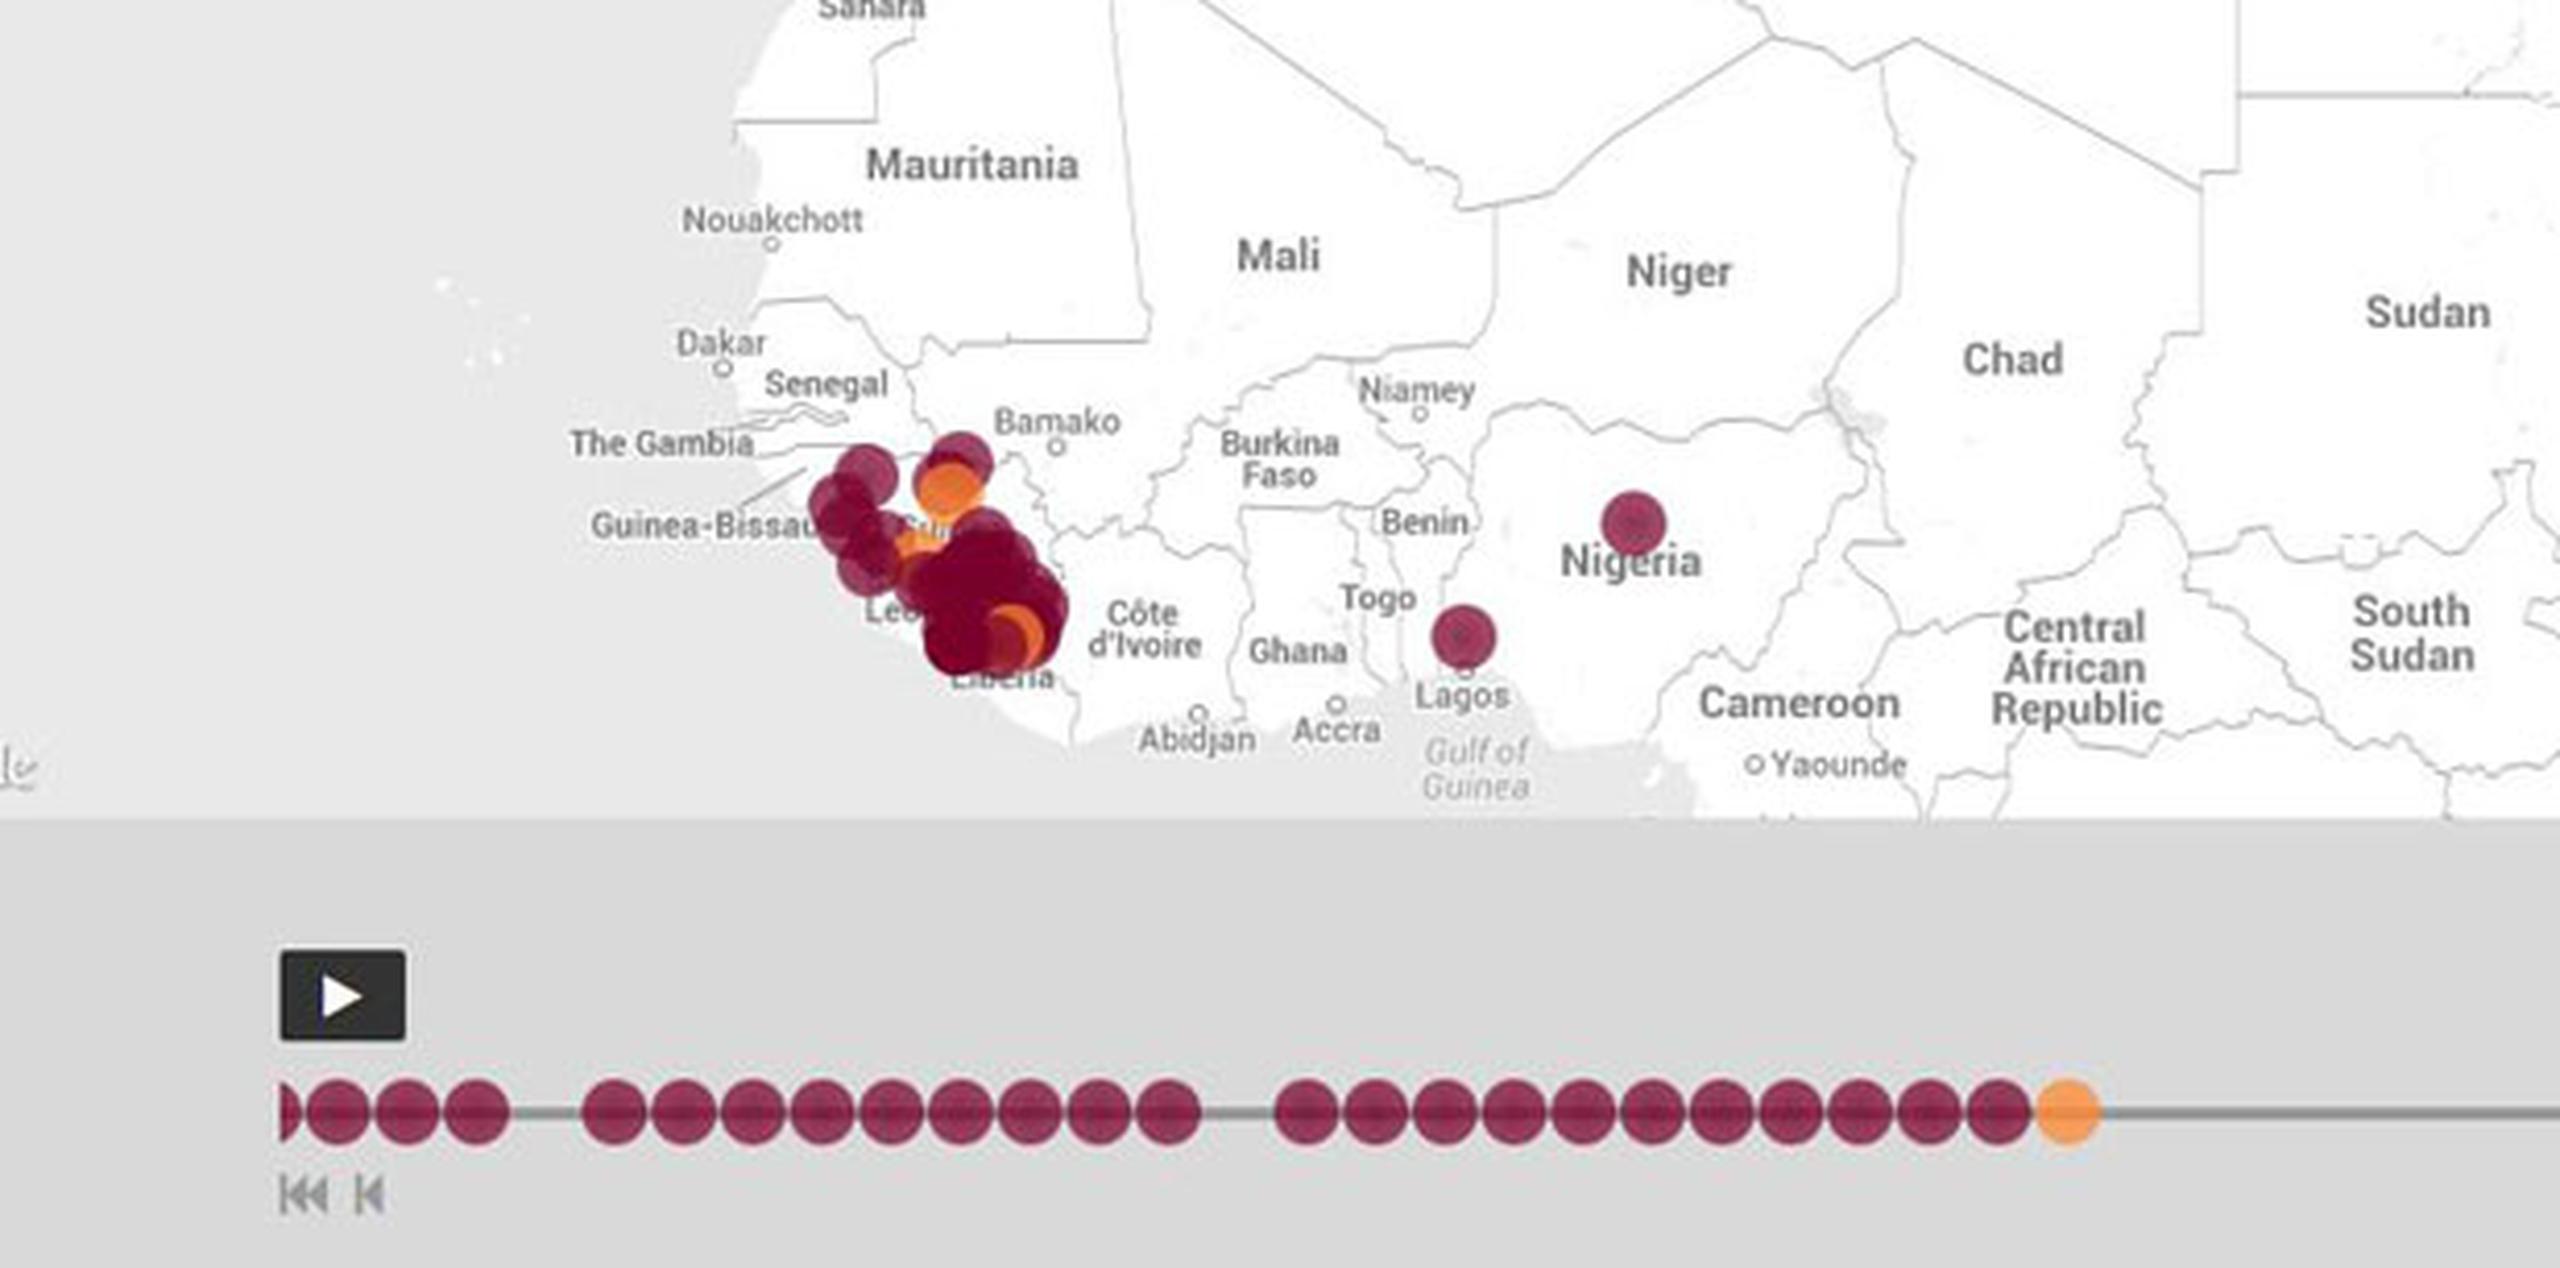 La herramienta en línea HealthMap utiliza algoritmos para escudriñar decenas de miles de sitios. (healthmap.org/ebola)